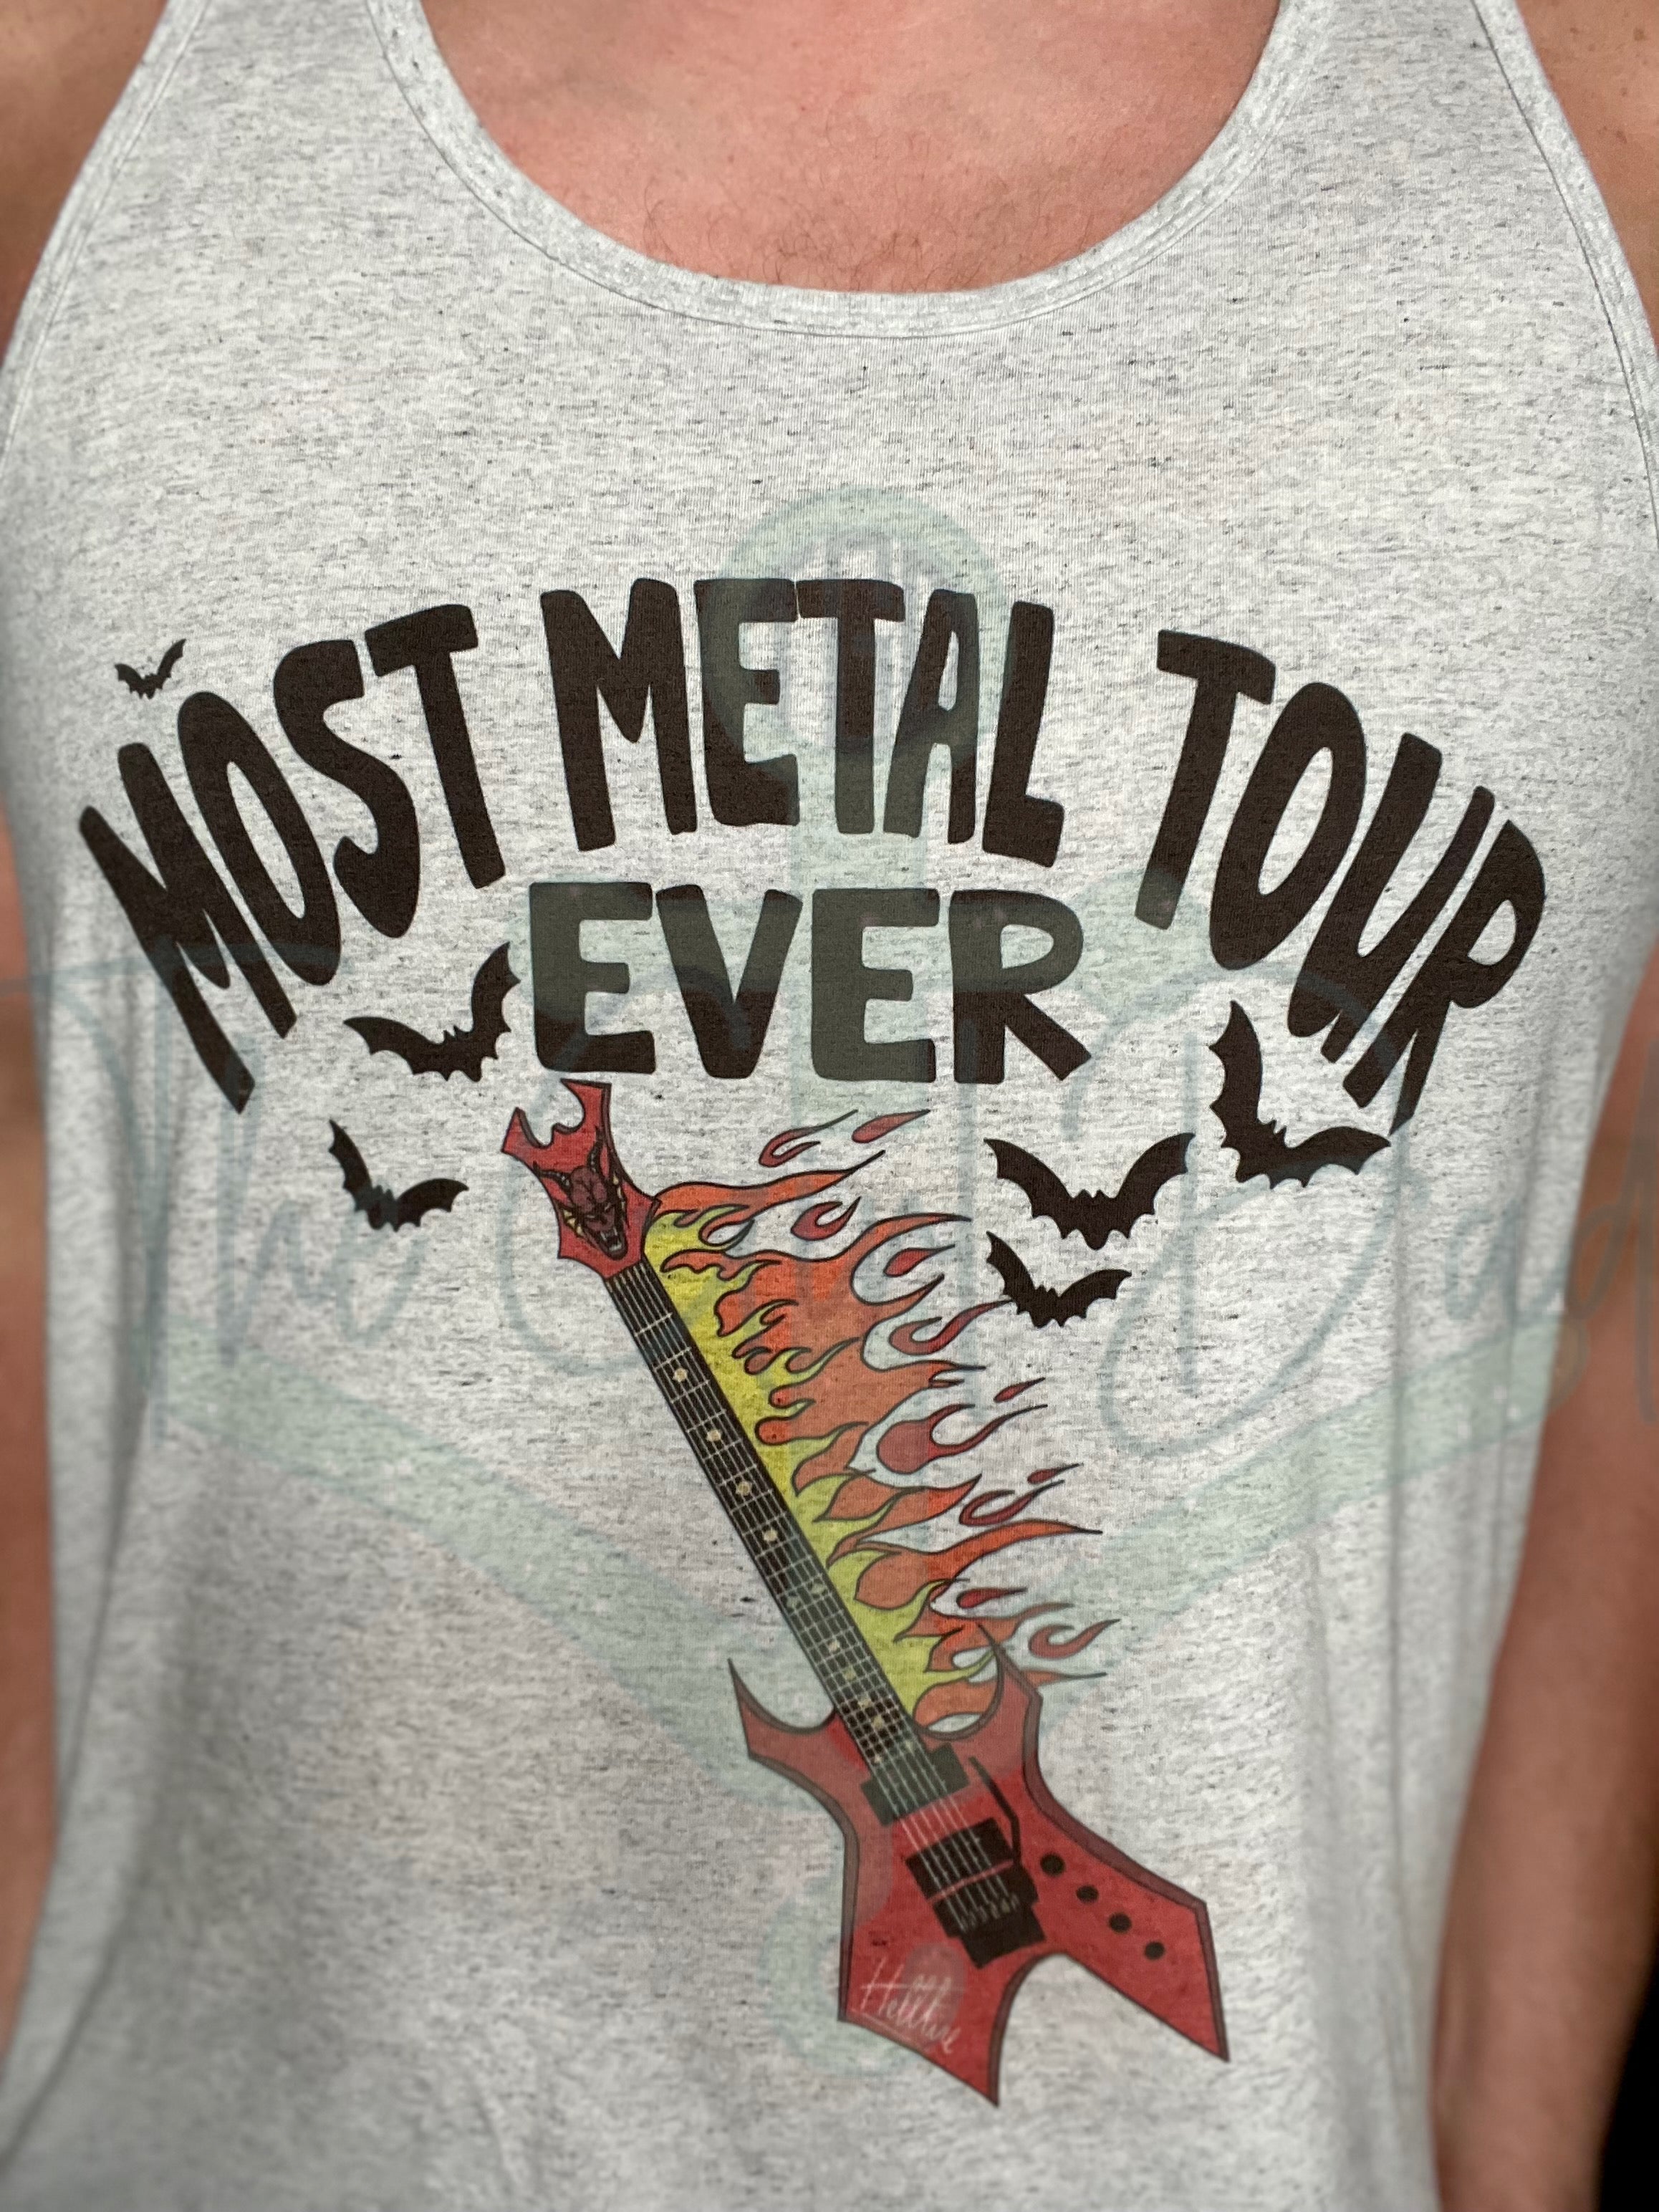 Most Metal Tour Ever Top Design